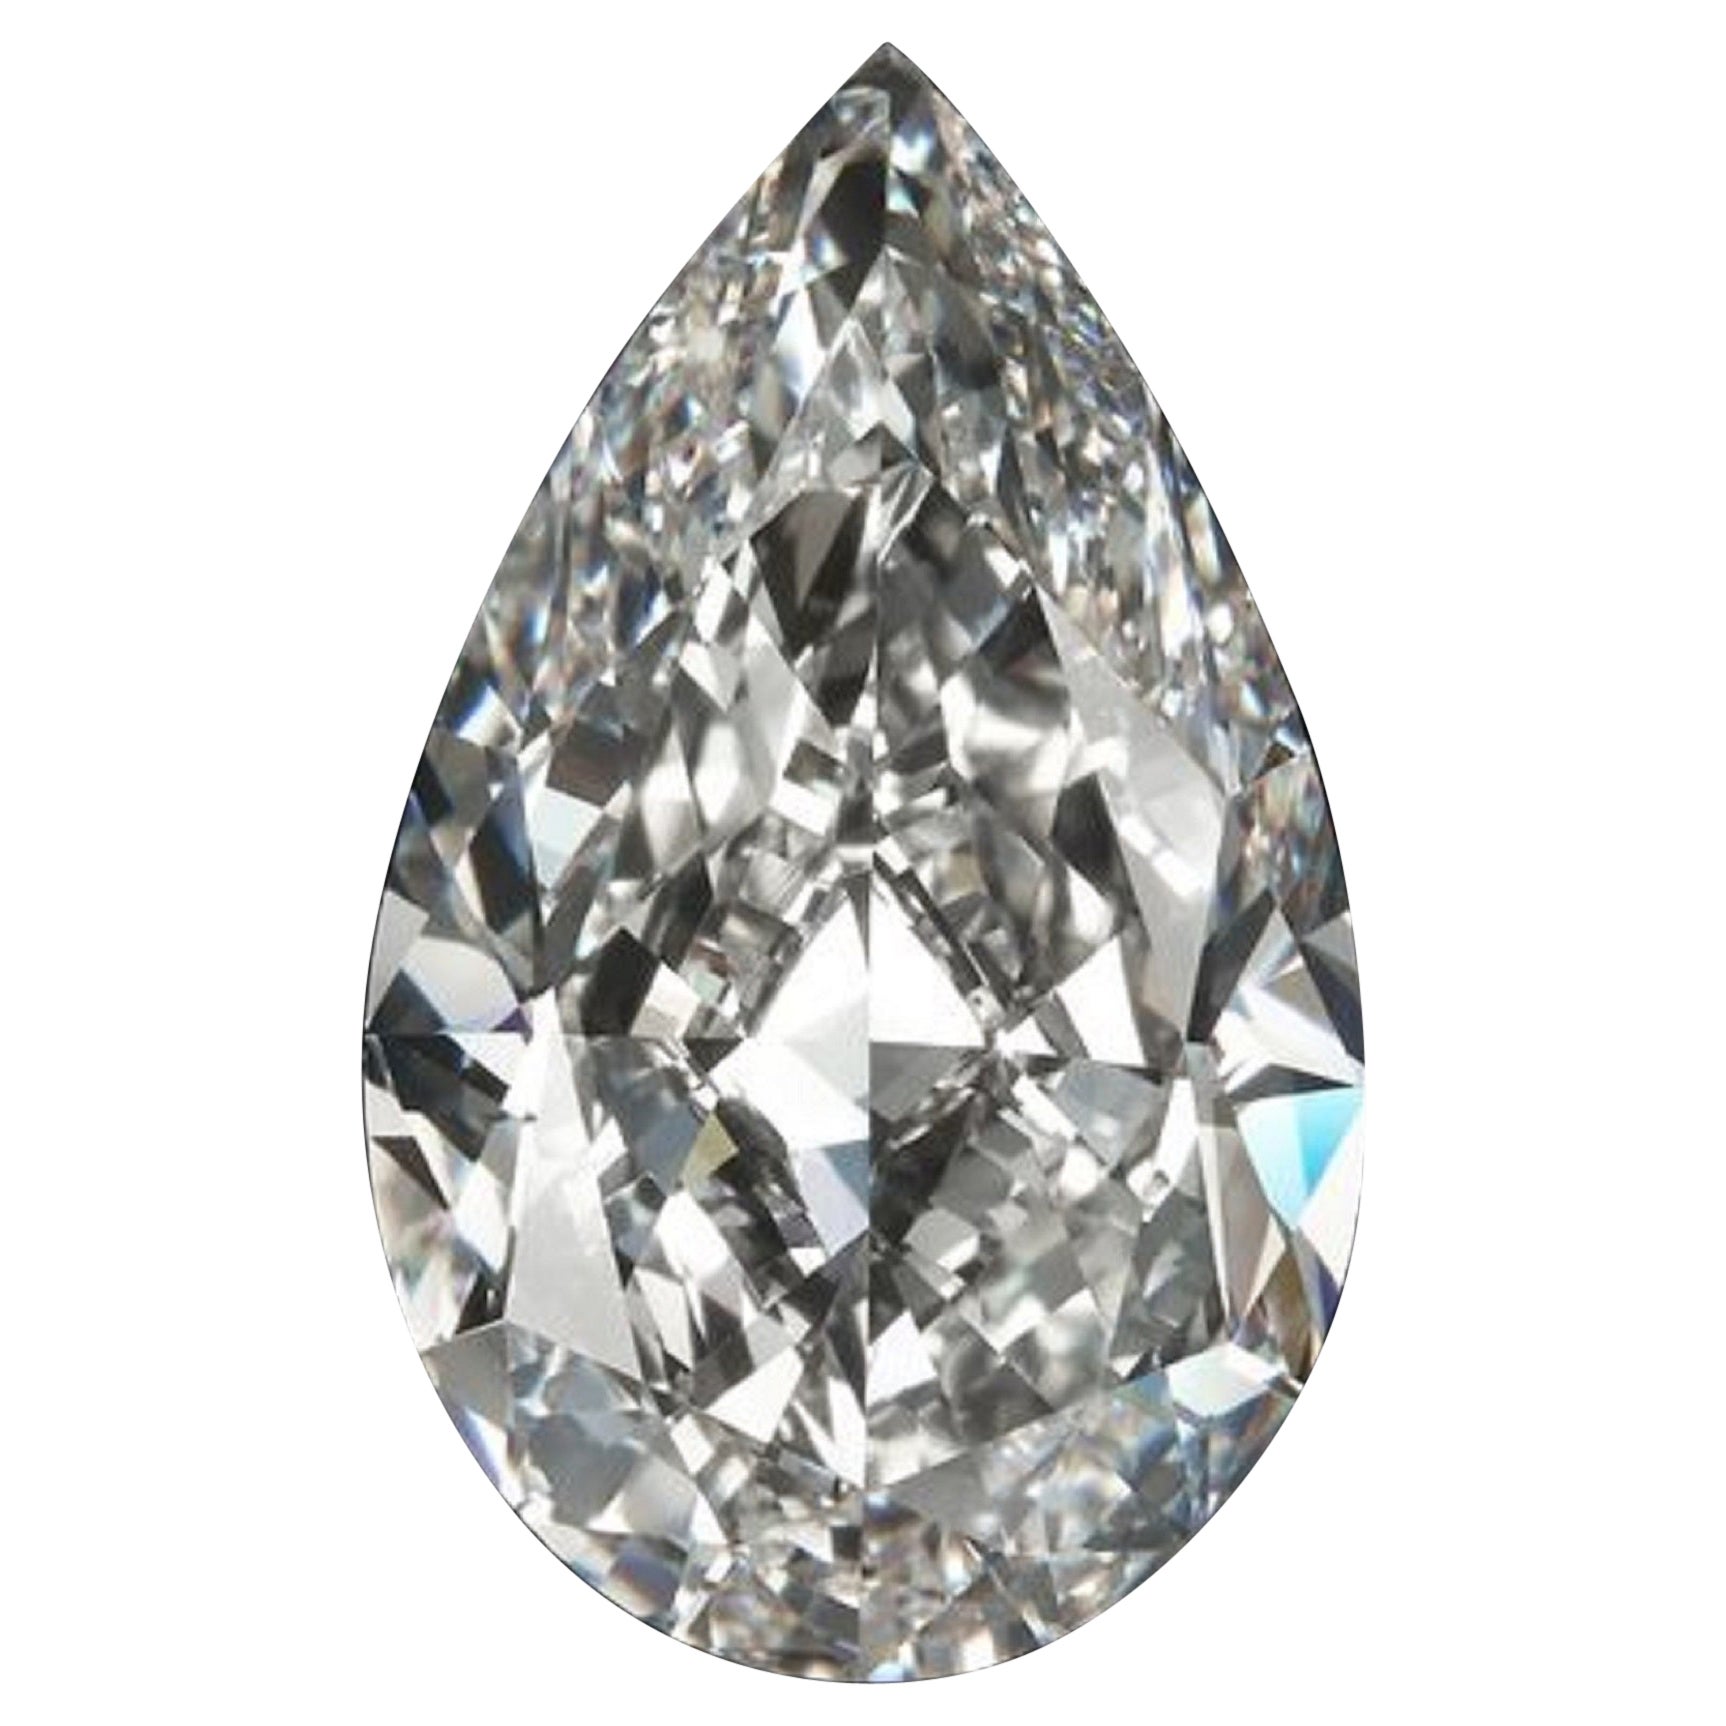 FLAWLESS GIA Certified 8.02 Carat Pear Cut Diamond Loose Stone